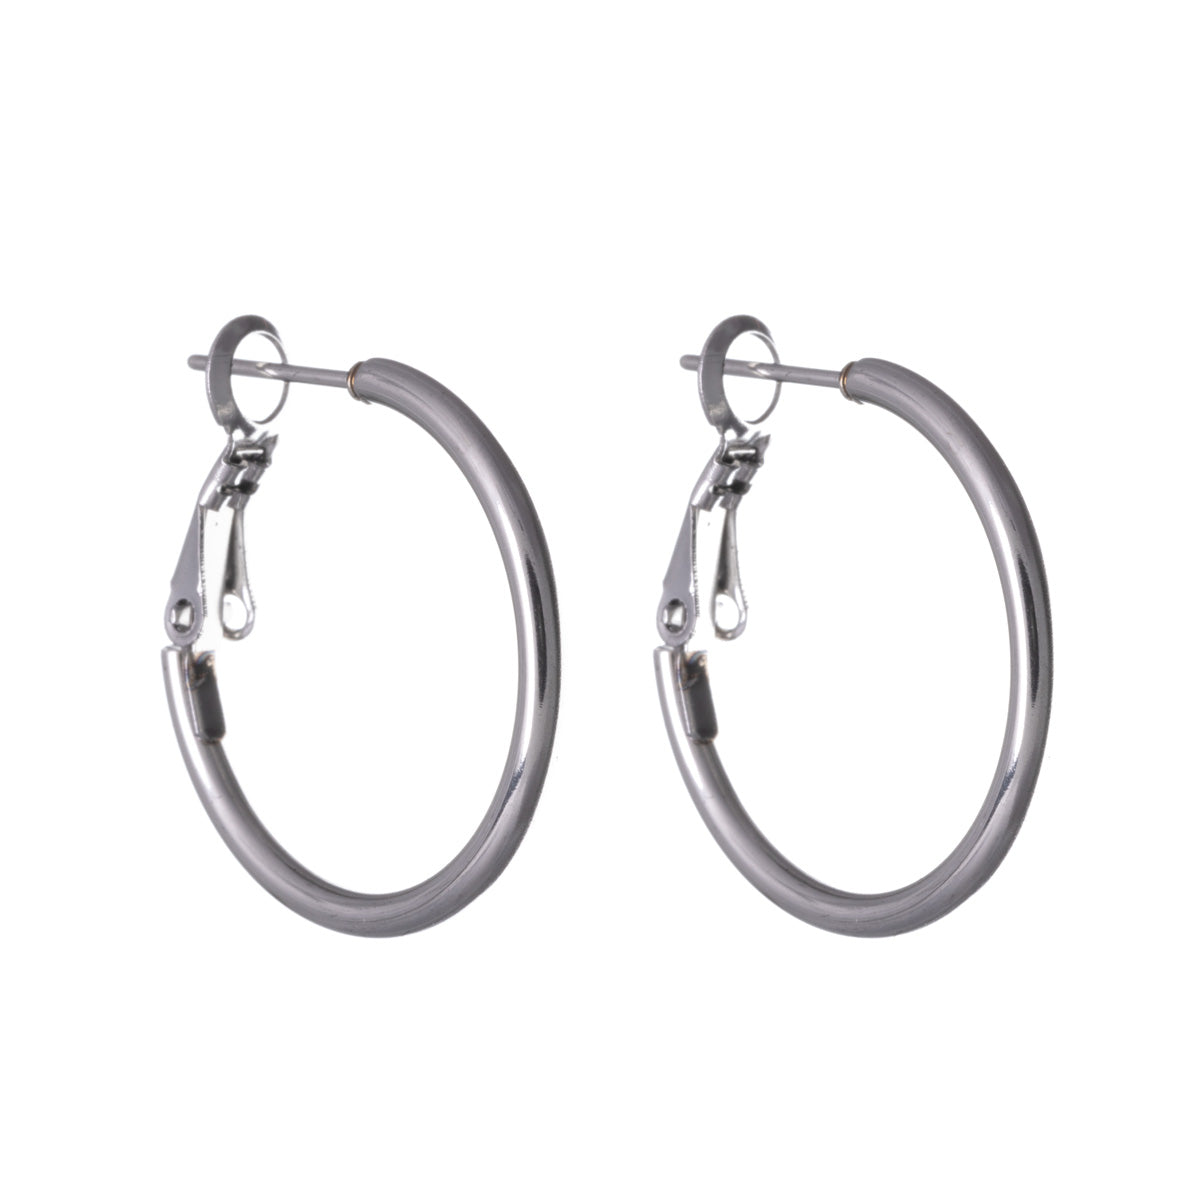 Steel earrings 2cm 2mm